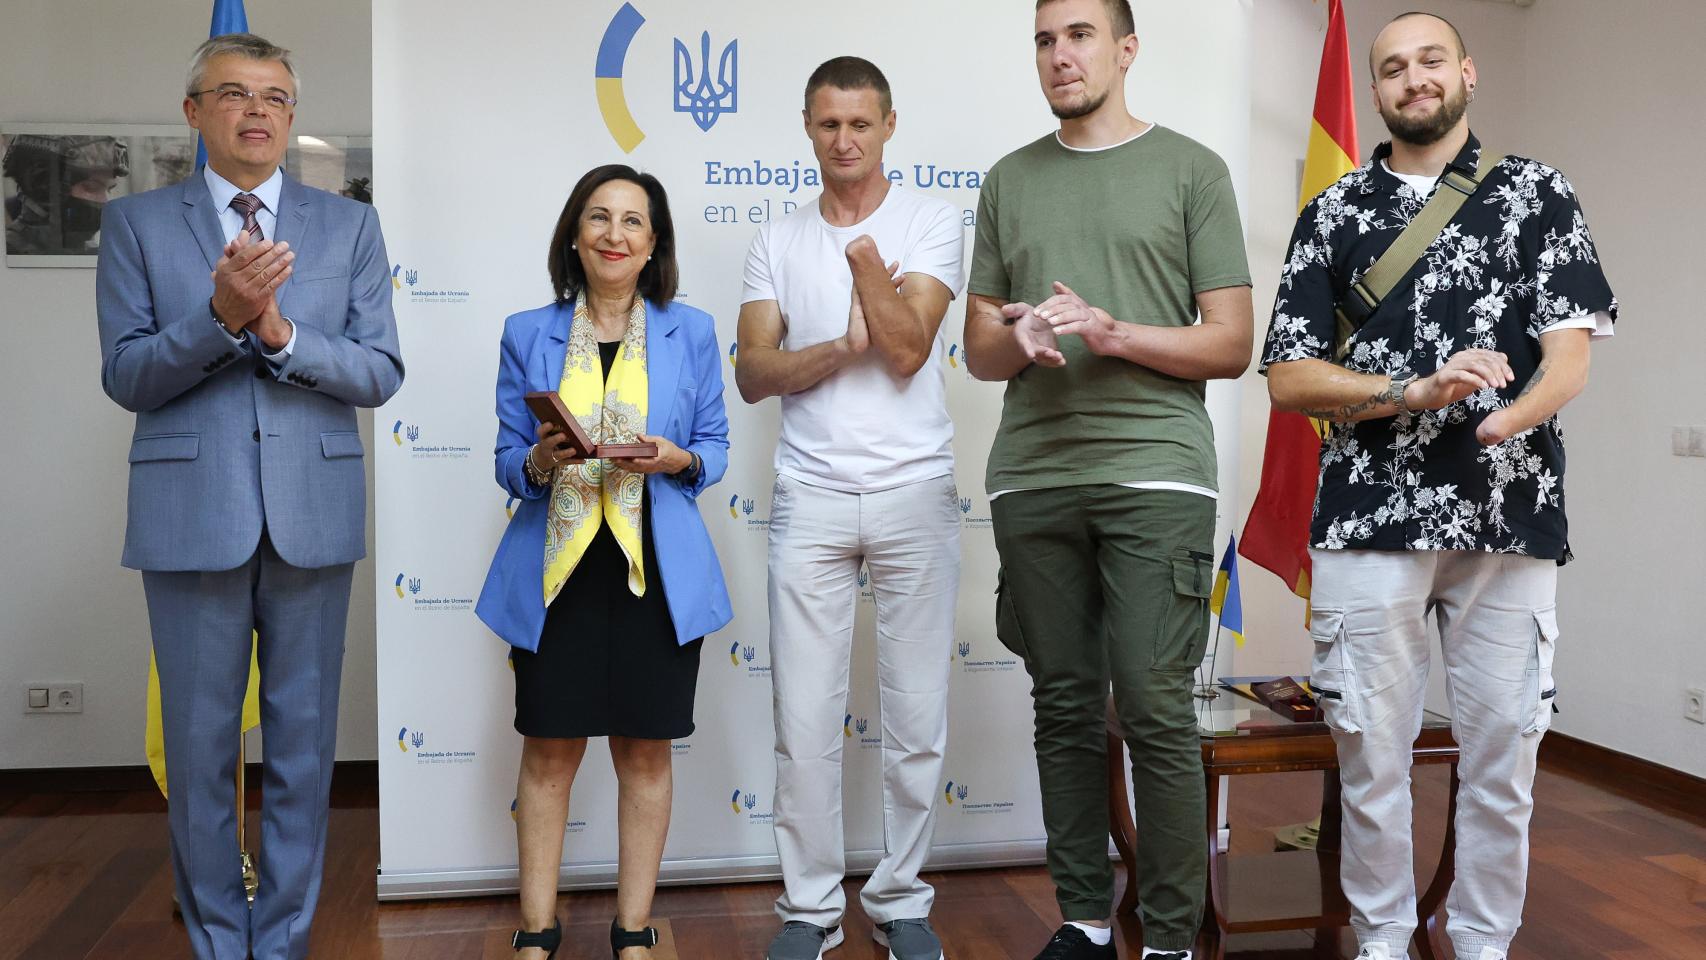 El embajador de Ucrania en España, Serhii Pohoreltsev (1i) y la ministra de Defensa en funciones, Margarita Robles (2i), junto a tres militares ucranianos